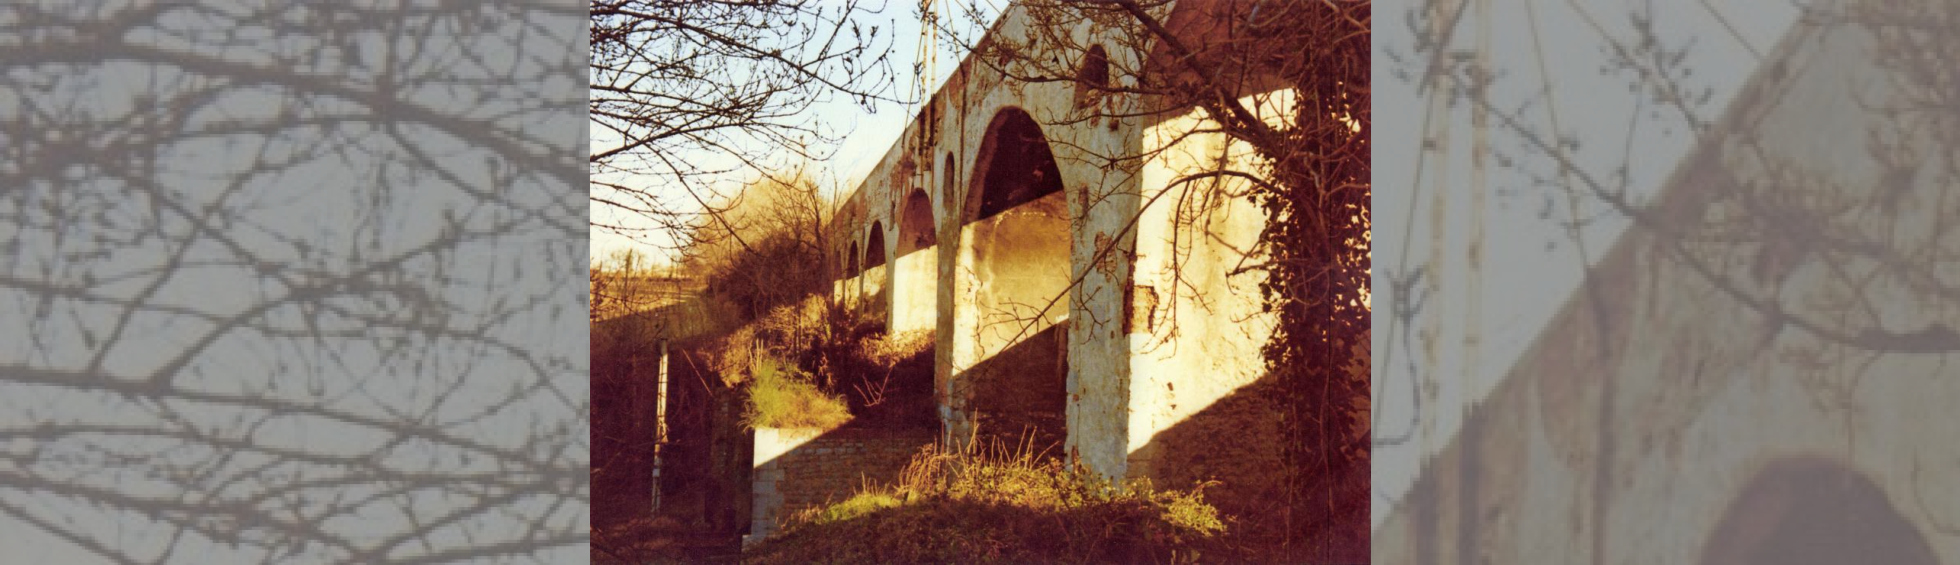 Vue de l'aqueduc: les arcades de briques supportant le canal